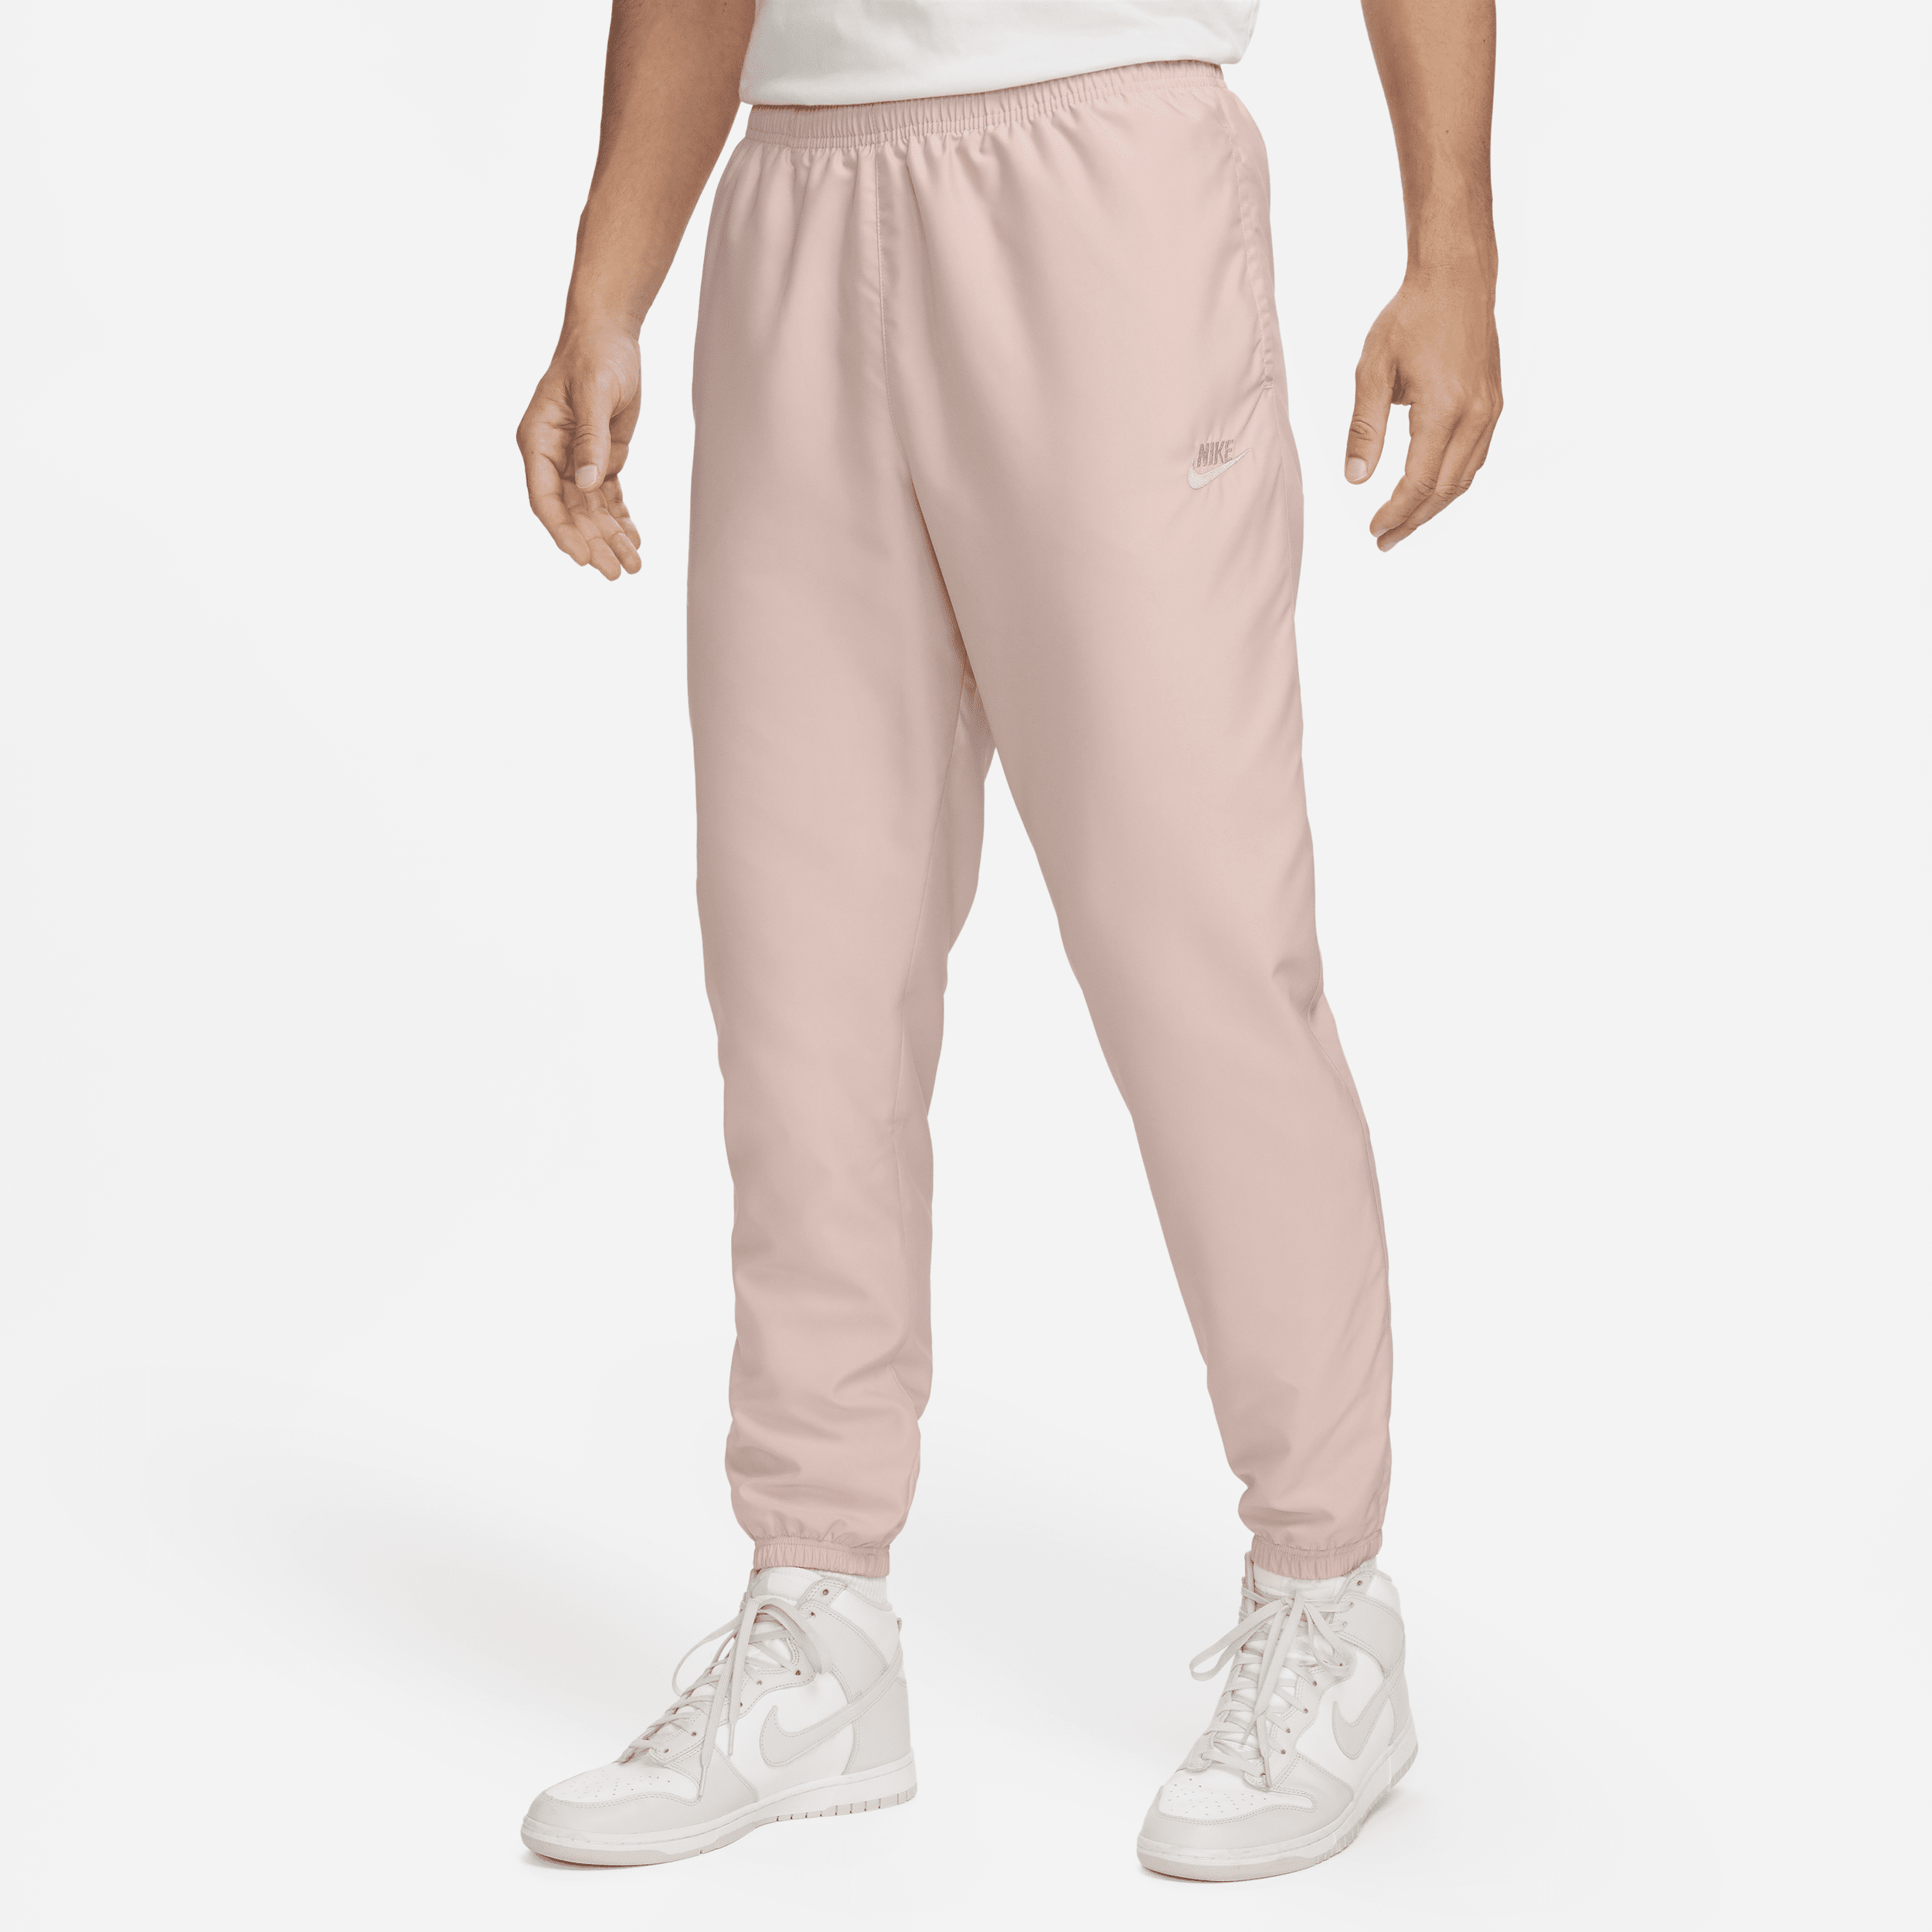 Vævede Nike Sportswear-bukser til mænd - Pink